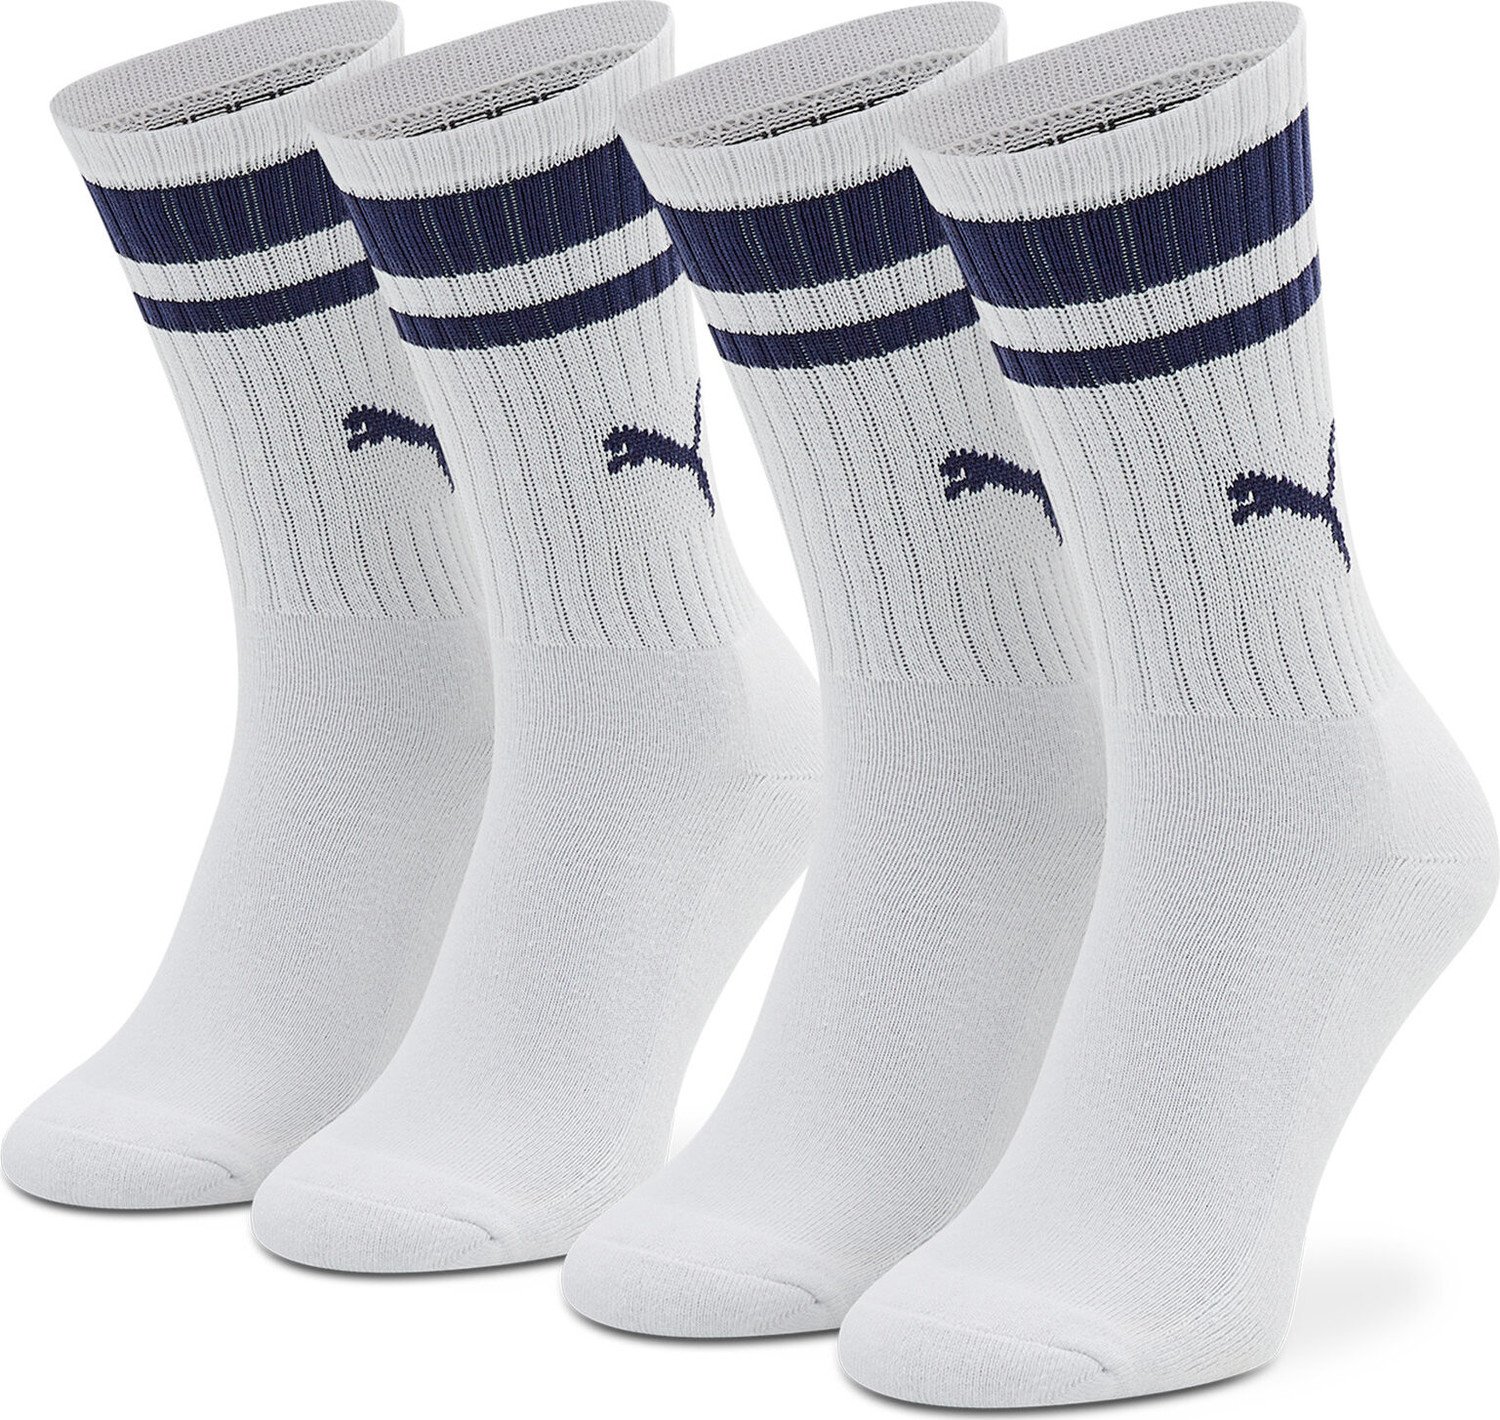 Sada 2 párů vysokých ponožek unisex Puma 907944 03 White/Blue 003